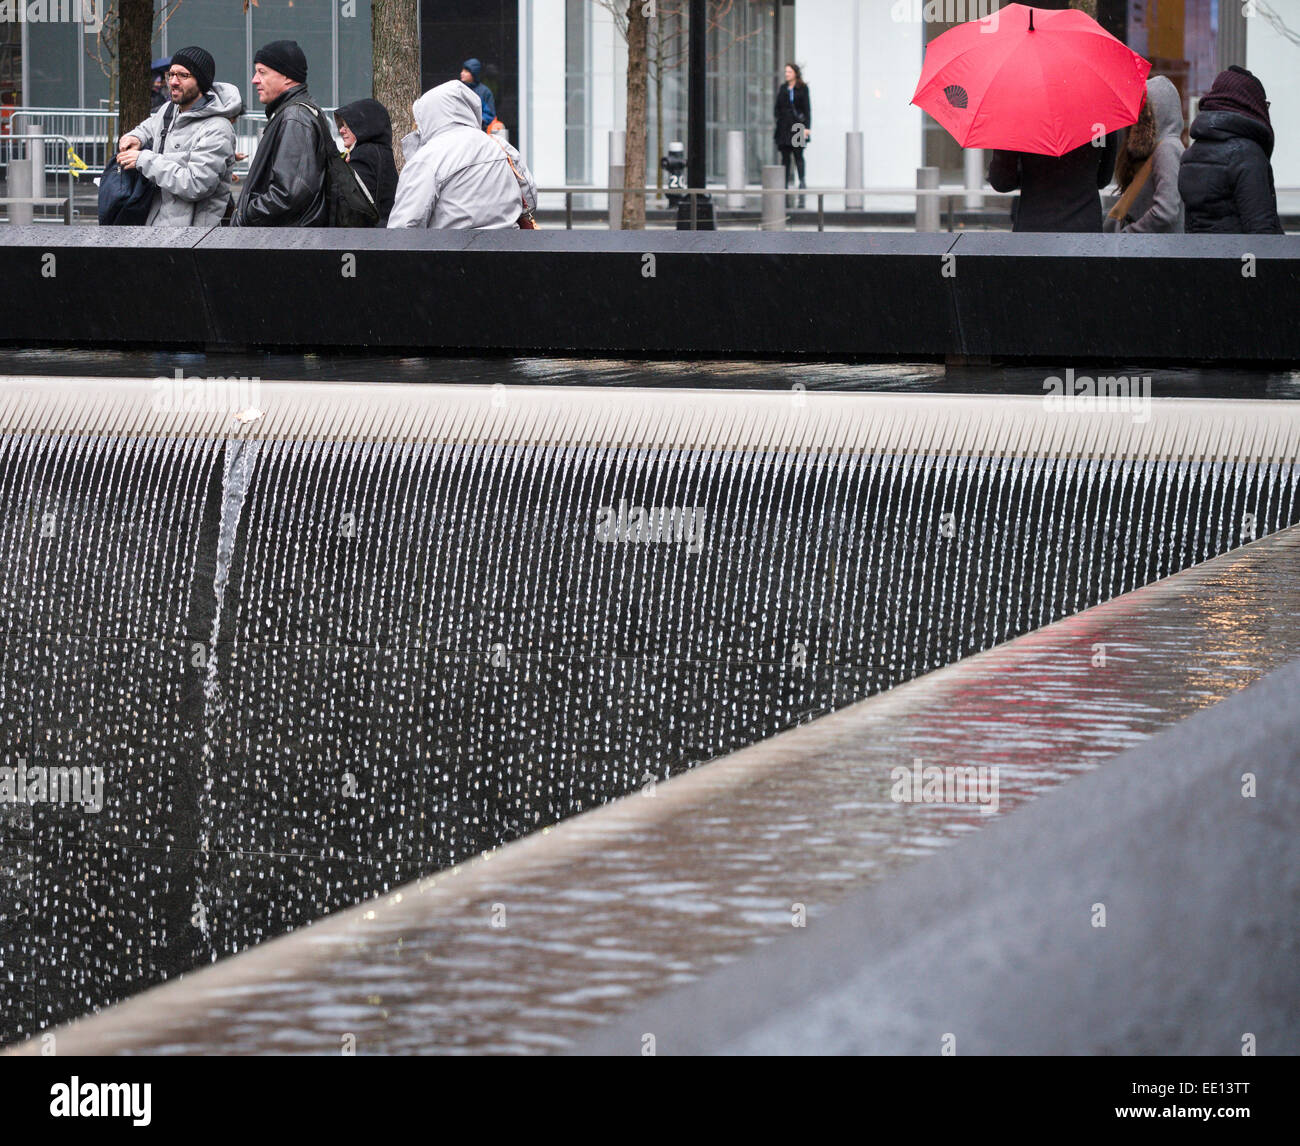 Memorial cade dettaglio sotto la pioggia con ombrello rosso. Dettaglio della cascata che costituisce una parte fondamentale del 9/11 Memorial. Foto Stock